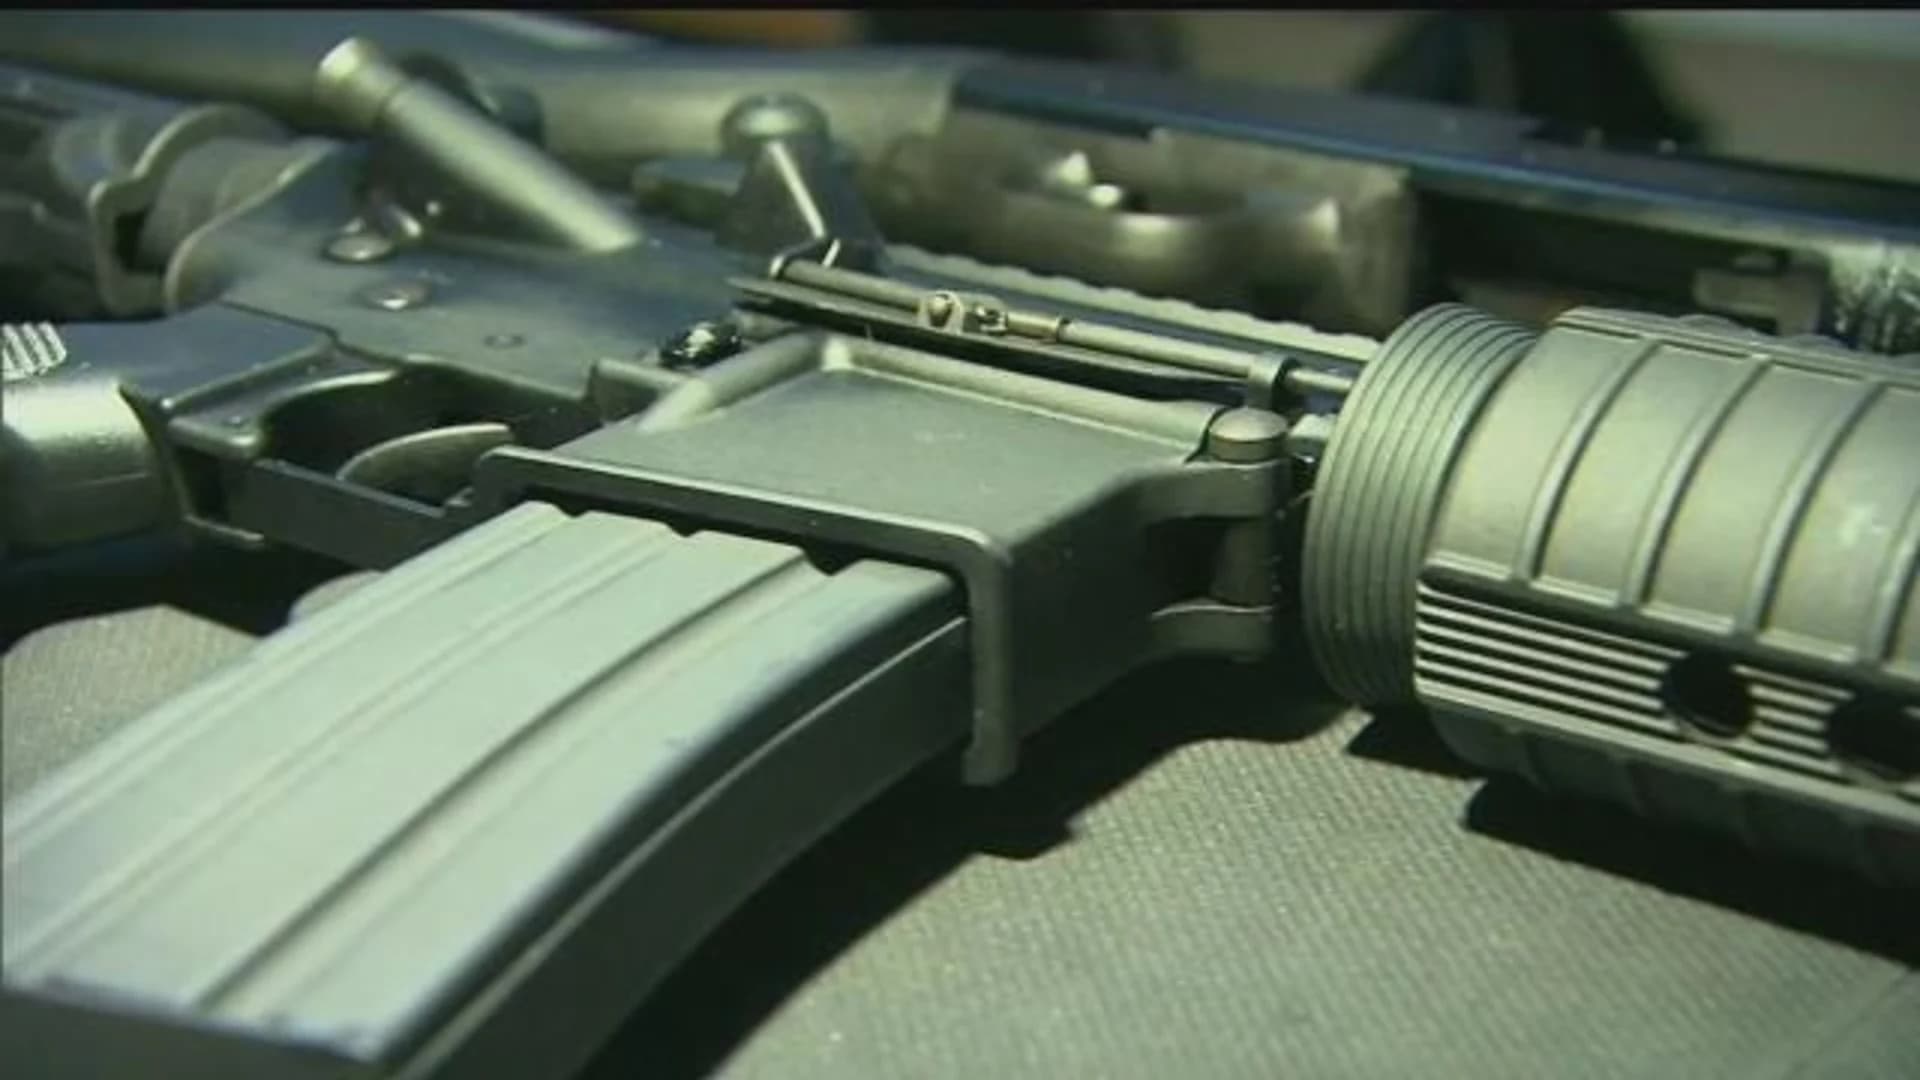 Lawsuit against gun-maker in Sandy Hook school shooting to move forward